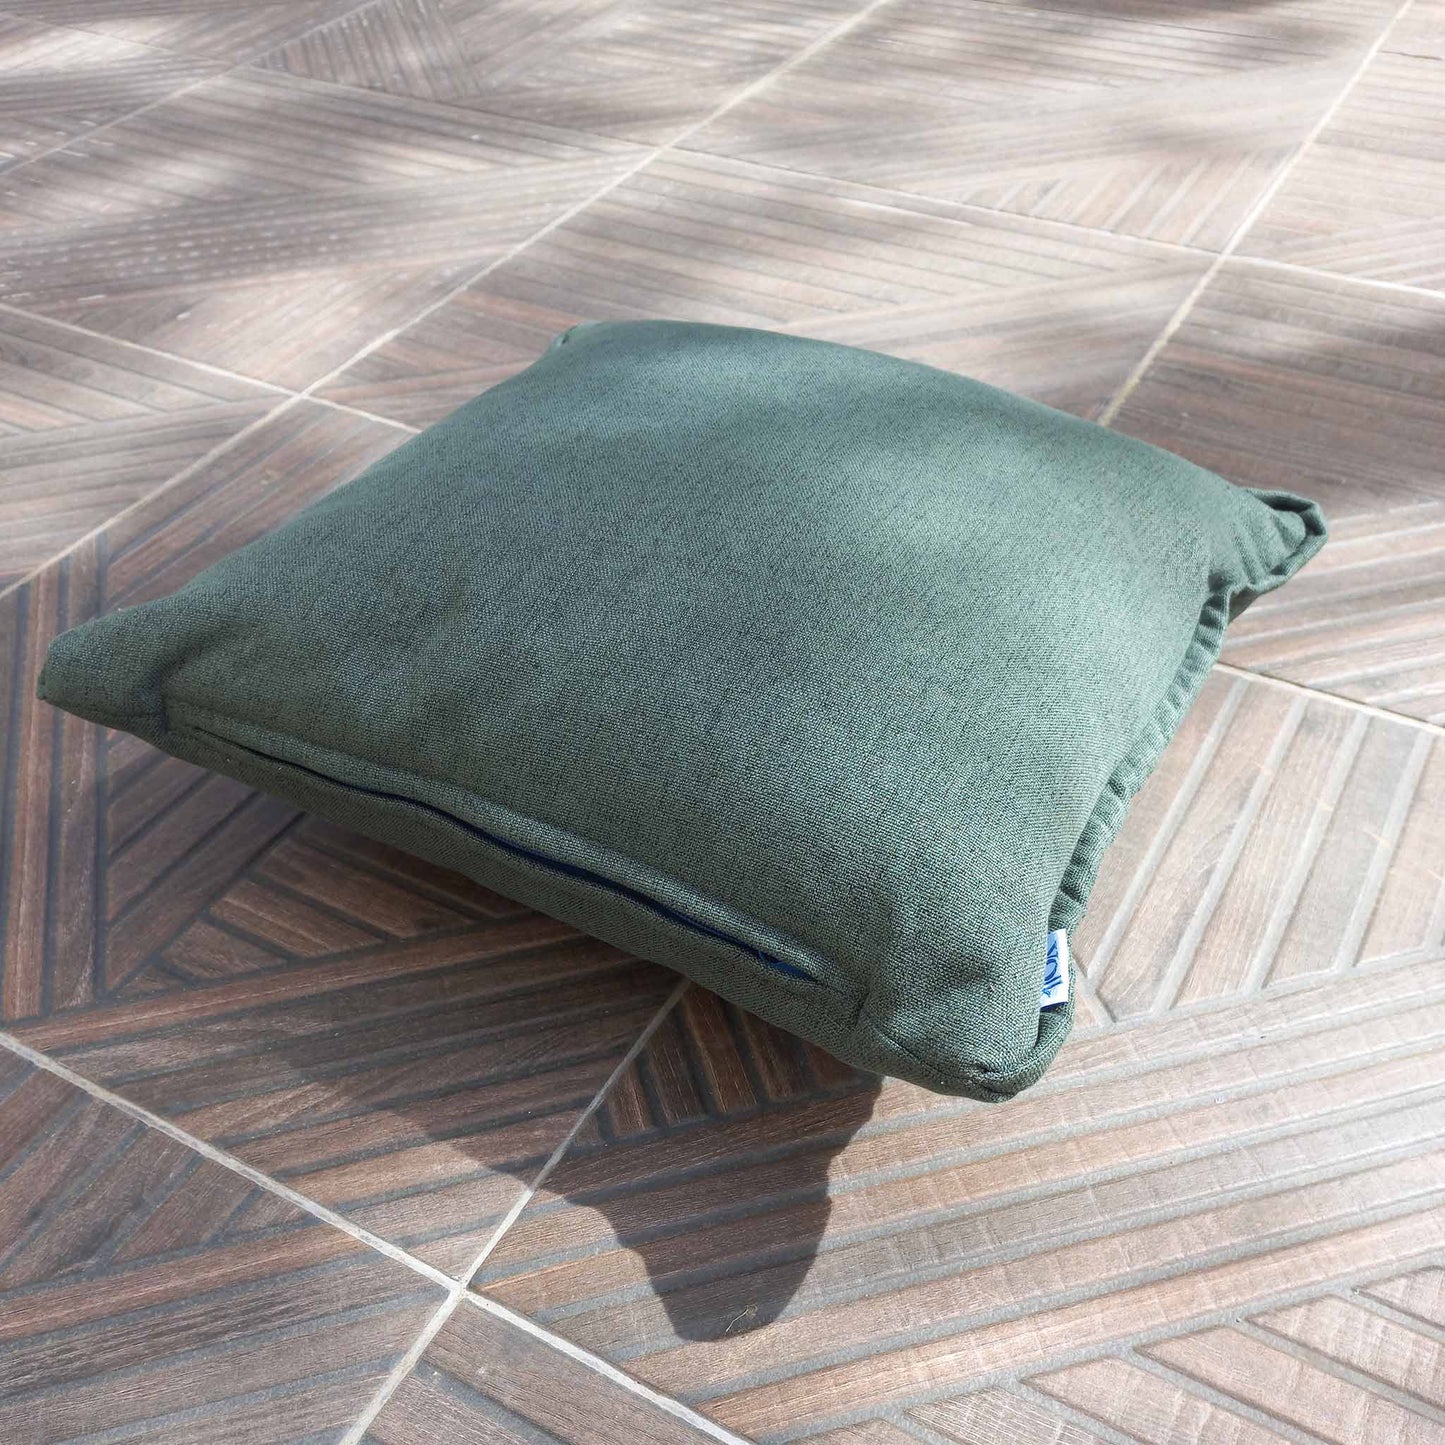 Green decorative cushion on a patio floor